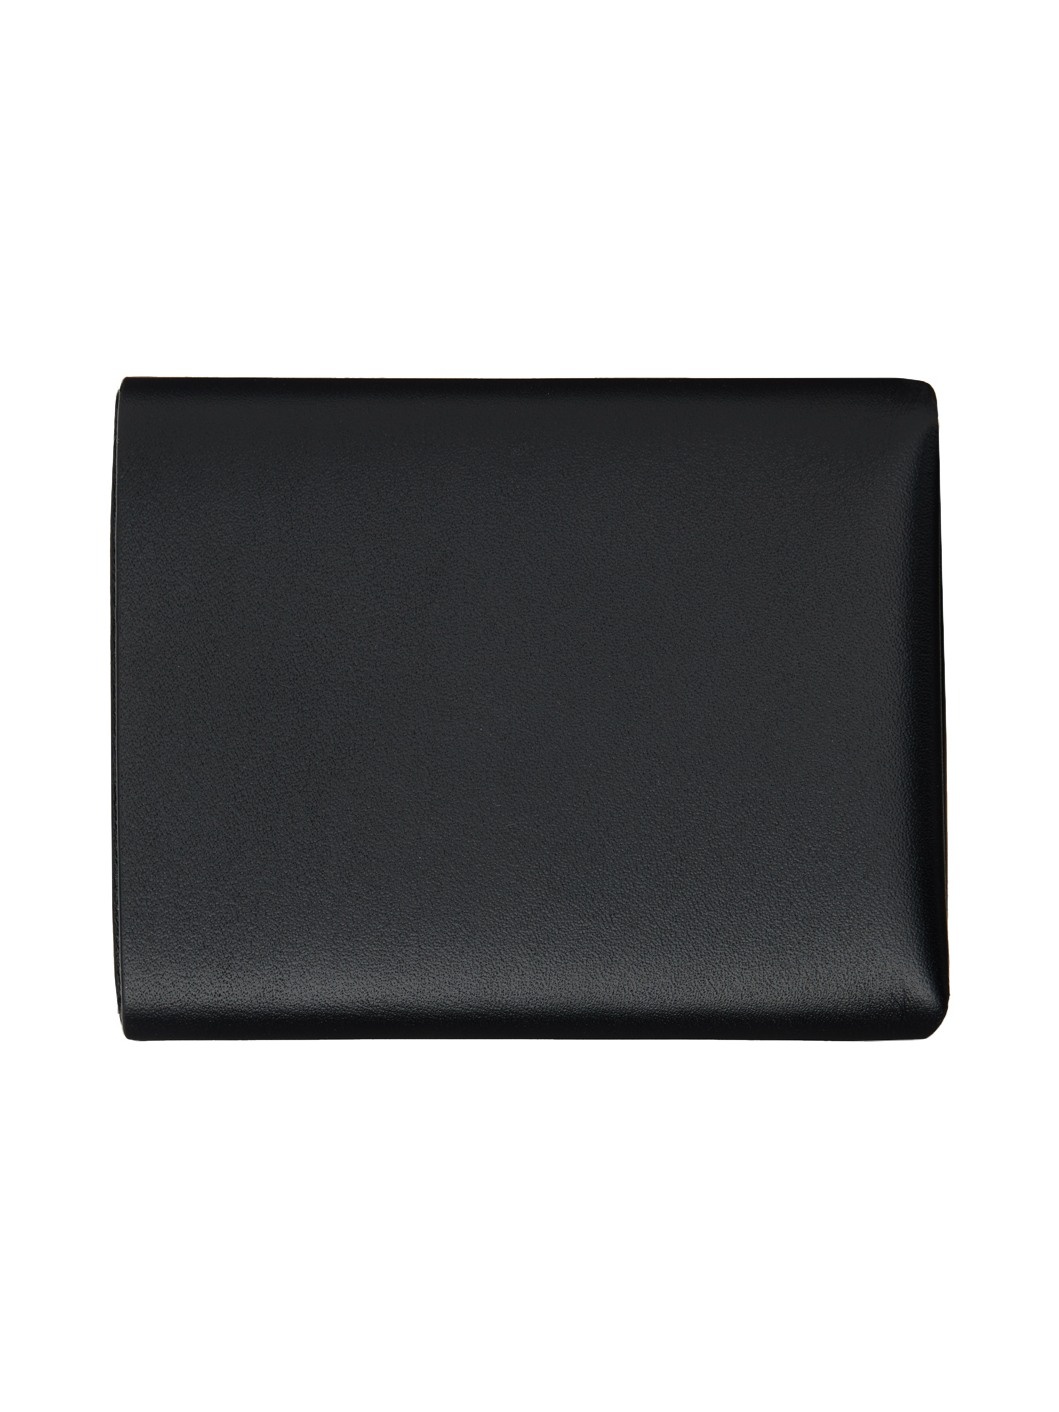 Black Origami Wallet - 2